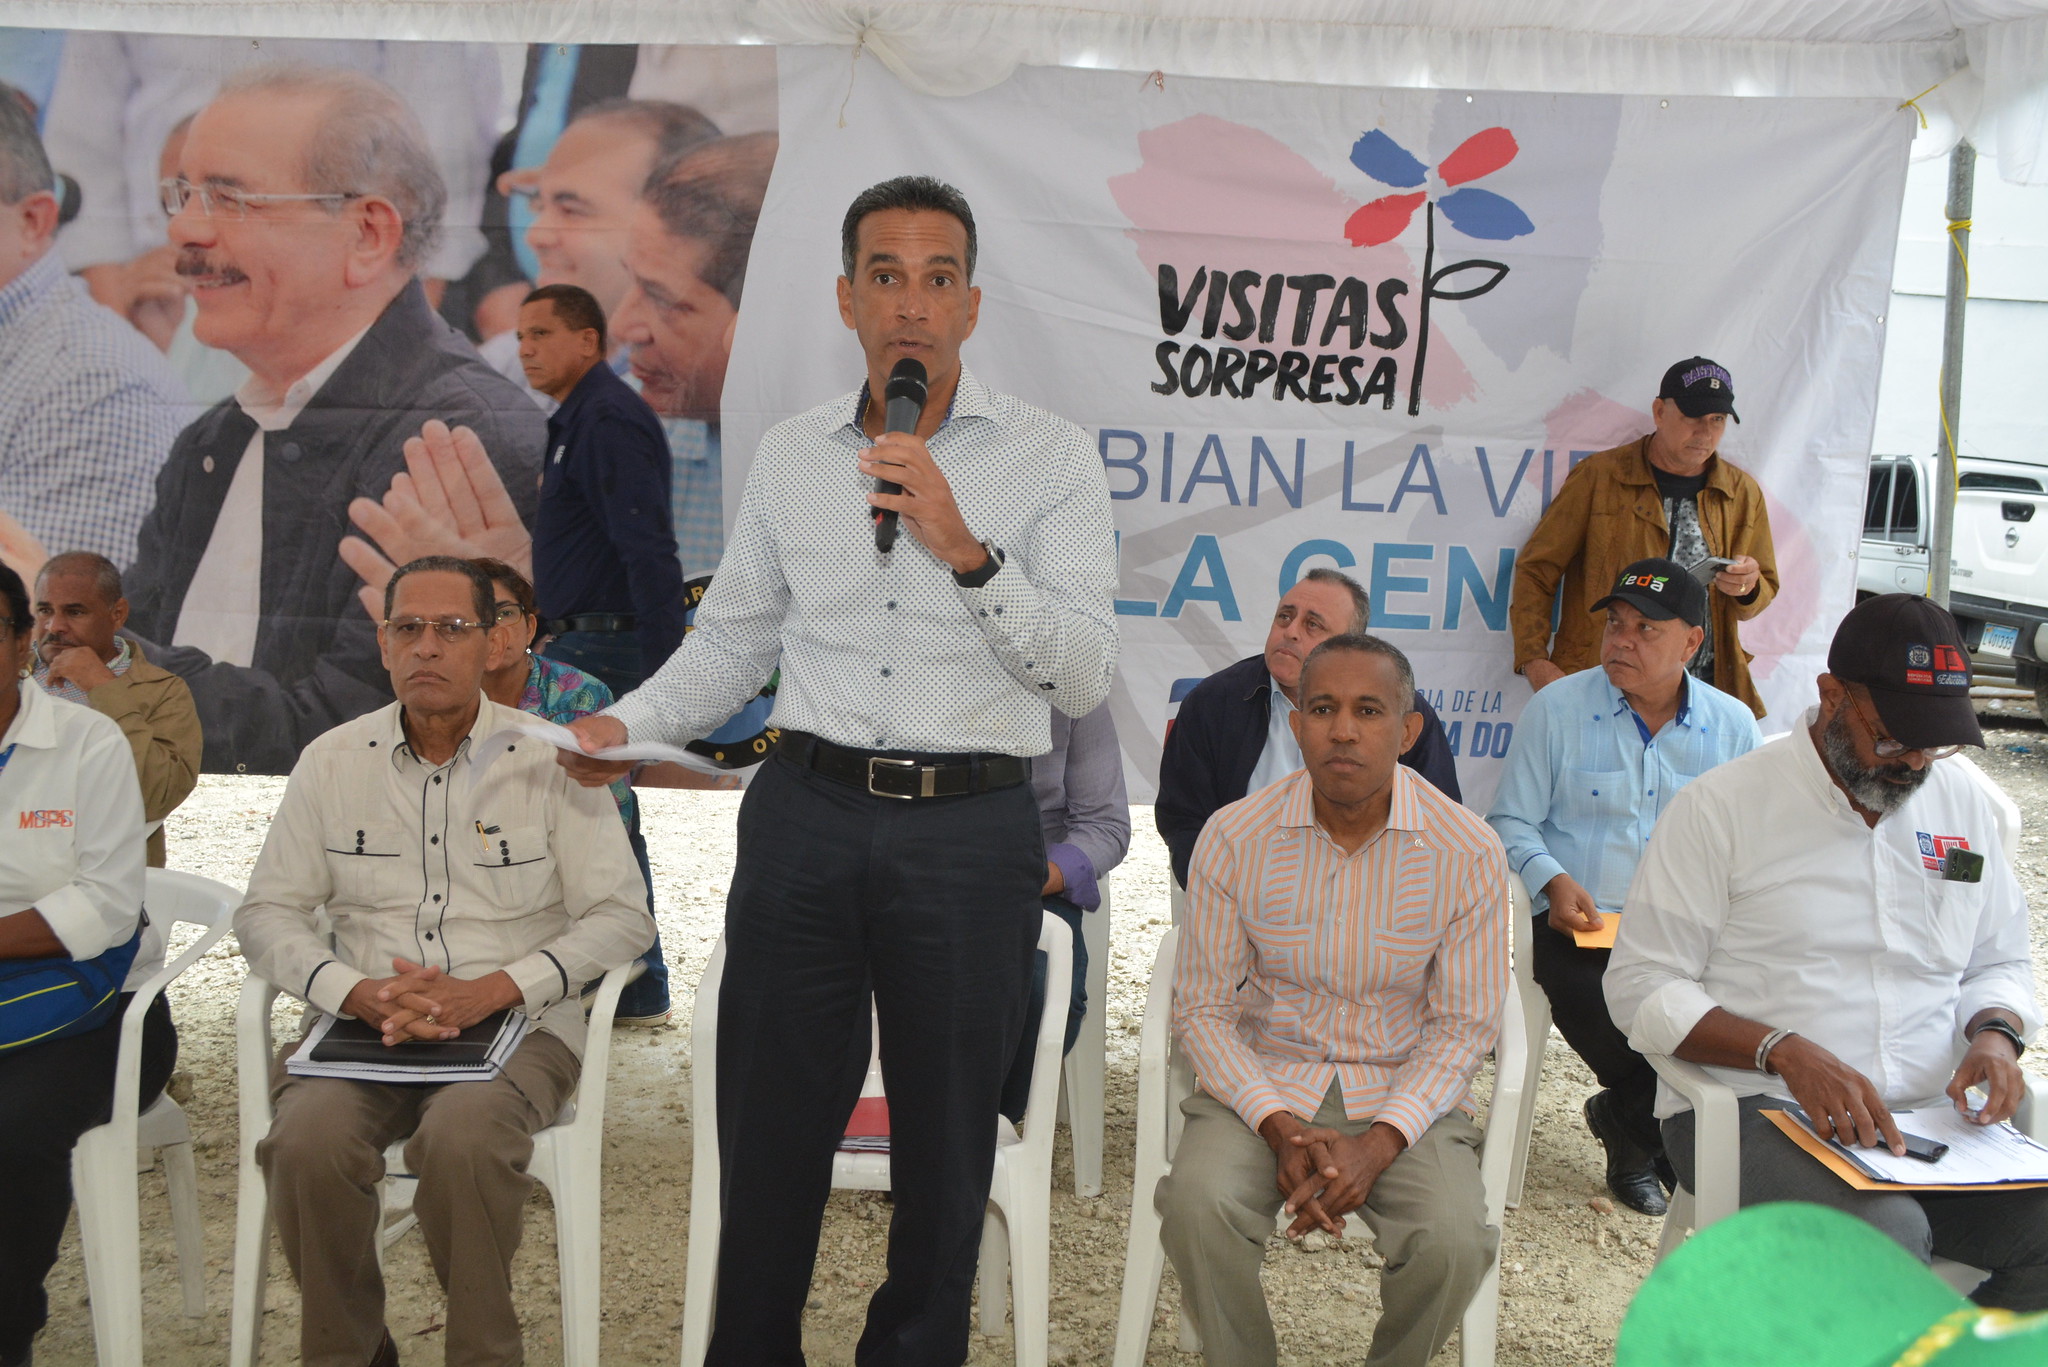 REPÚBLICA DOMINICANA: Durante inicio mesas de trabajo Visita Sorpresa, productores de buen pan y comunitarios agradecen a Danilo Medina por acordarse de Cabrera